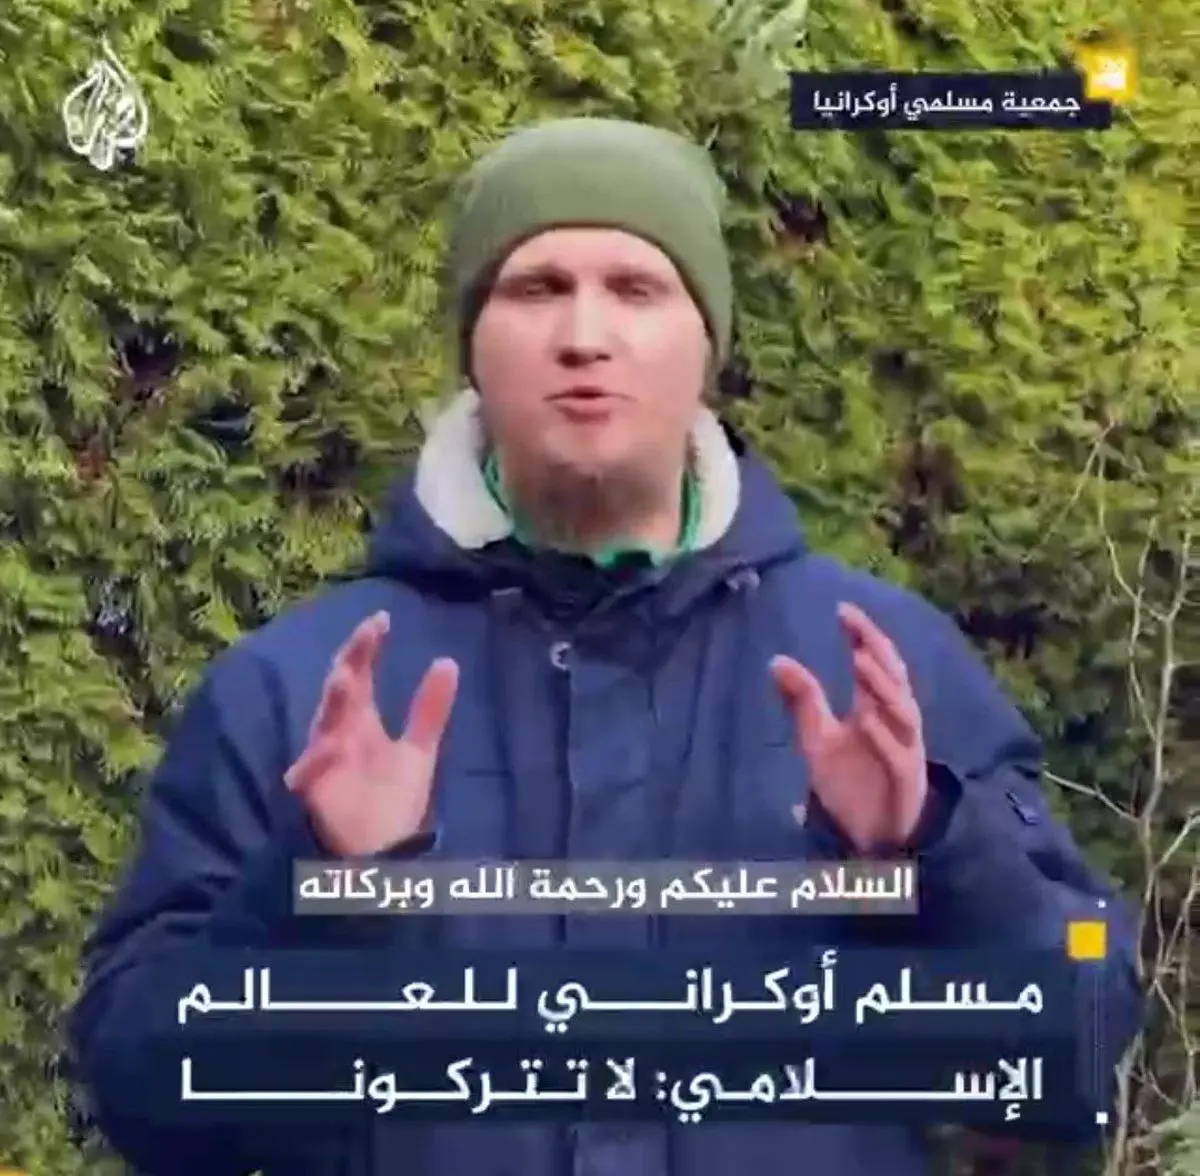 پیام ویدئویی مسلمان اوکراینی به مسلمانان سراسر جهان